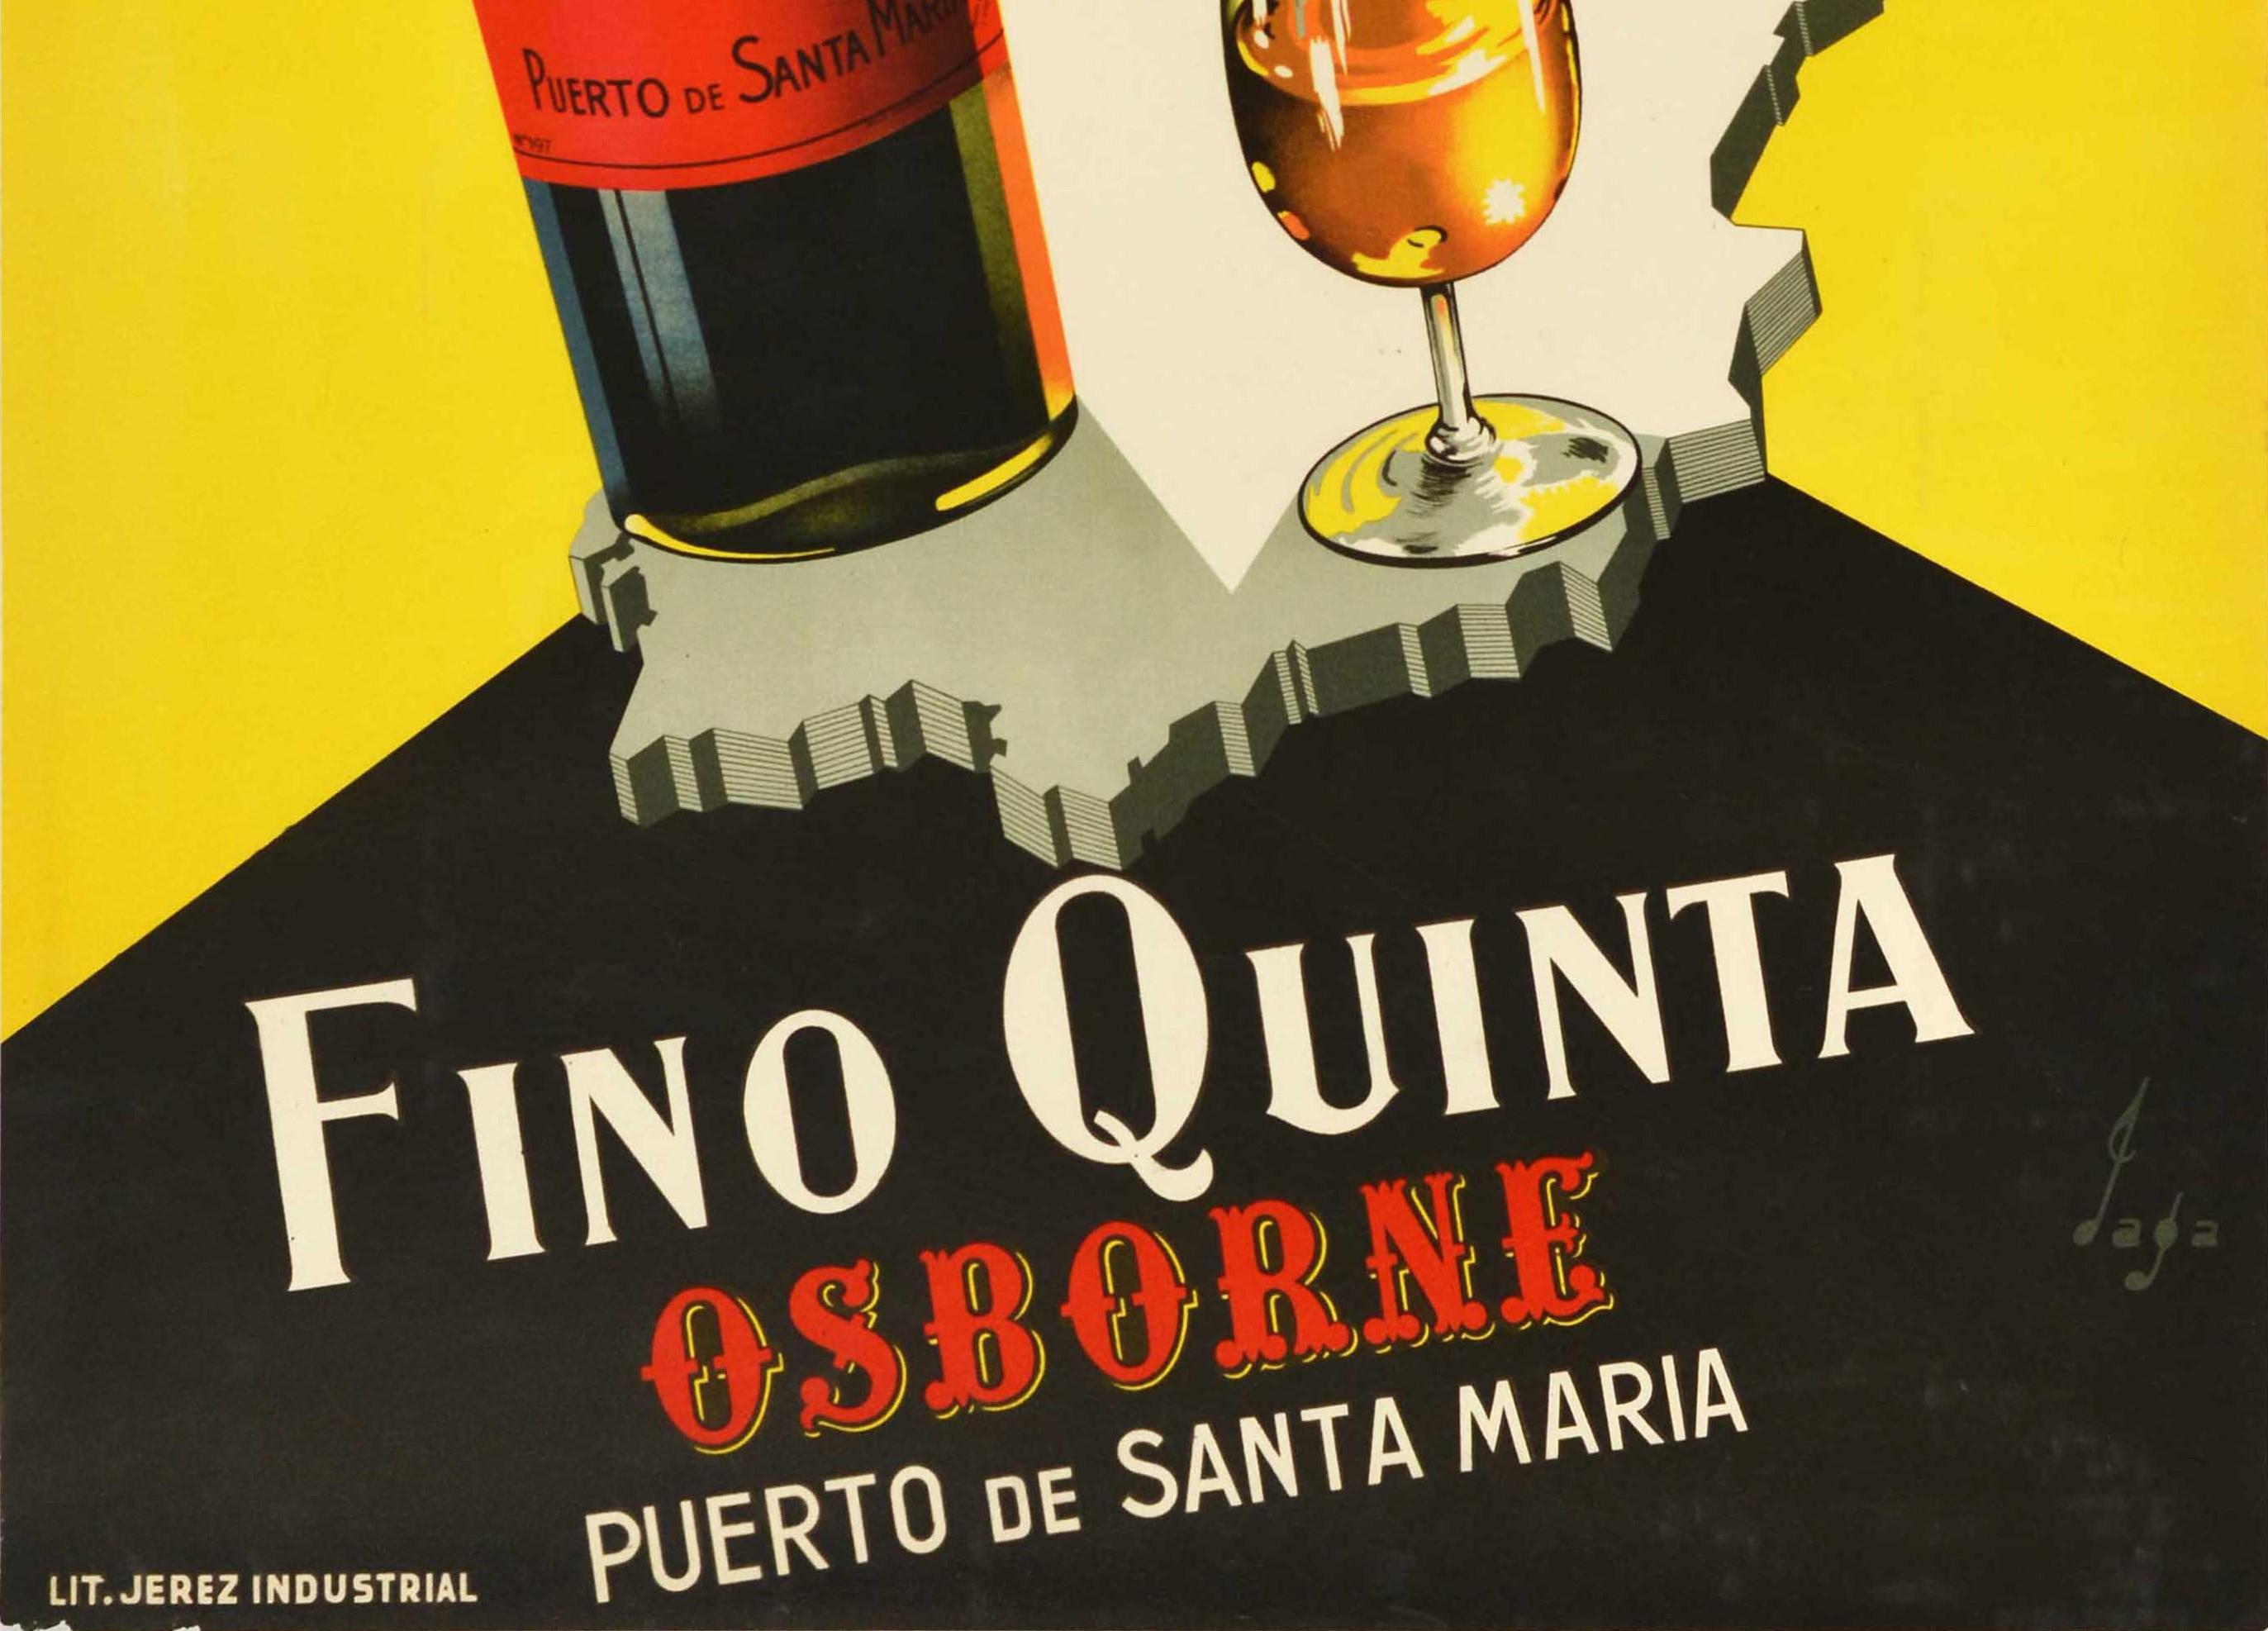 Original Vintage Getränke-Poster Fino Quinta Osborne Sherry Spanien Karte Bull Design (Gelb), Print, von Jaga